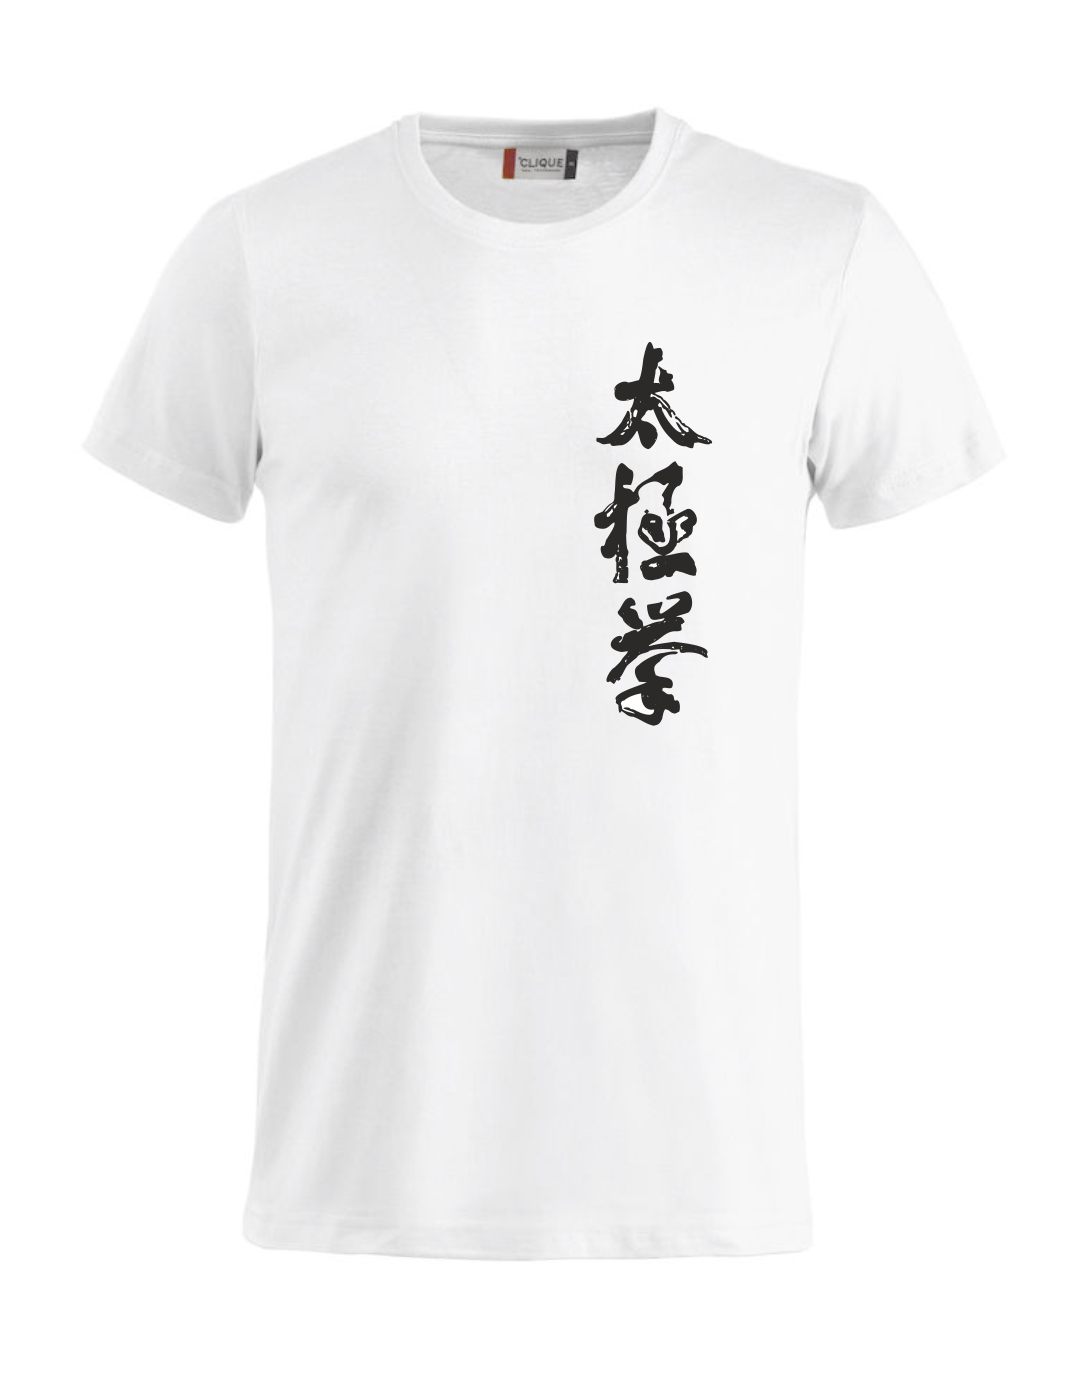 T-Shirt Tai-Chi Chuan weiss